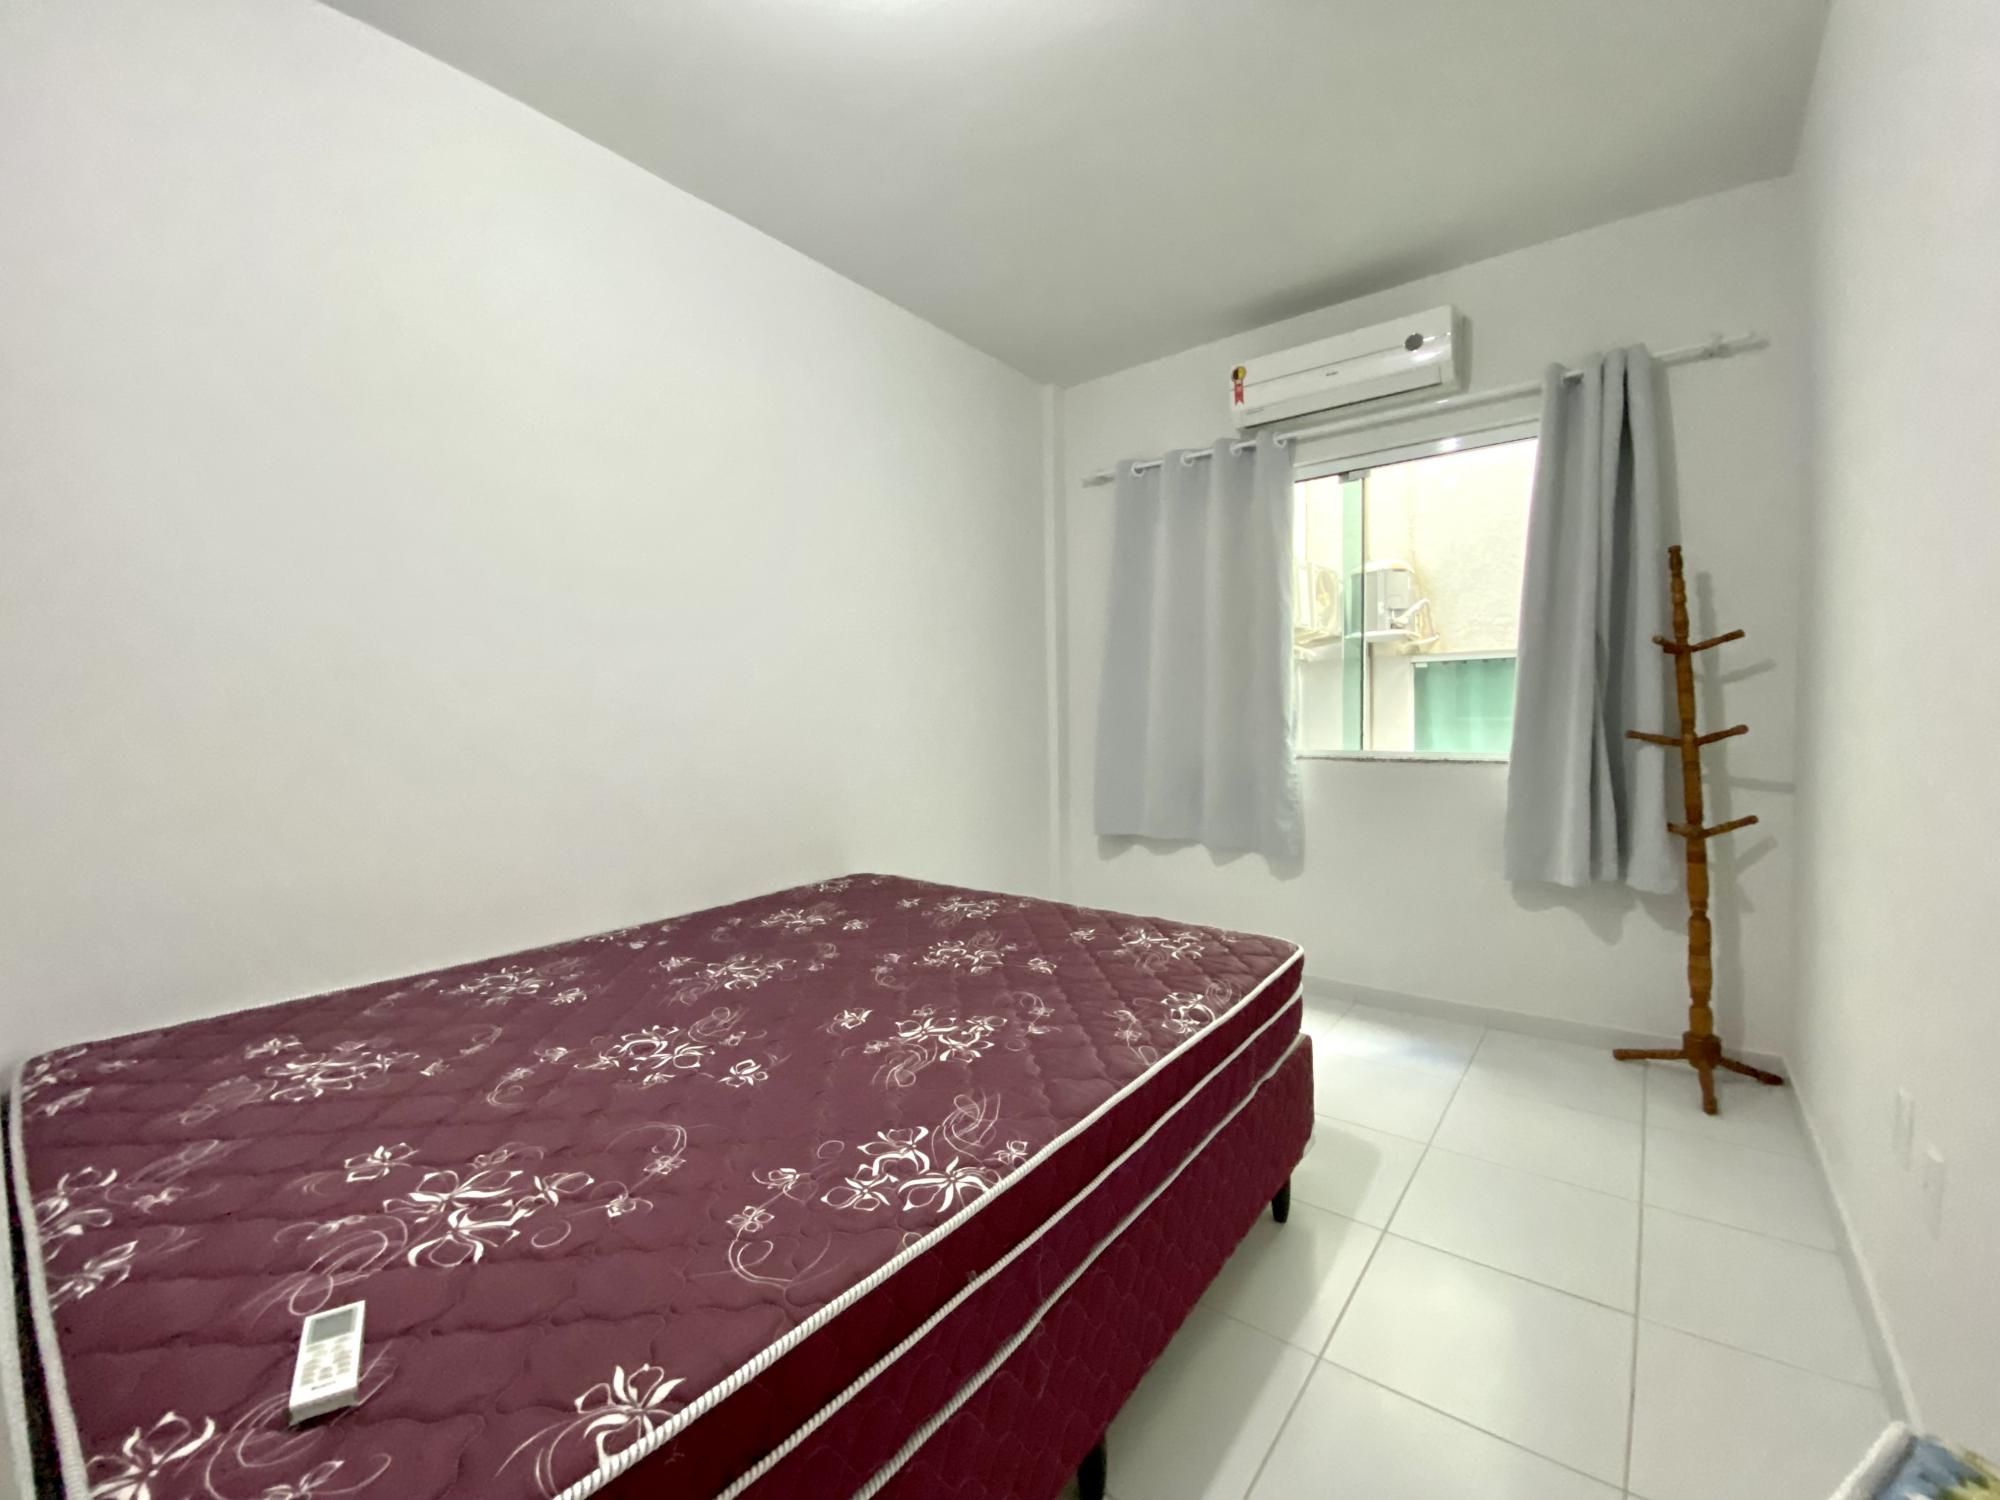 Apartamento com 2 Dormitórios para alugar, 70 m² valor à combinar